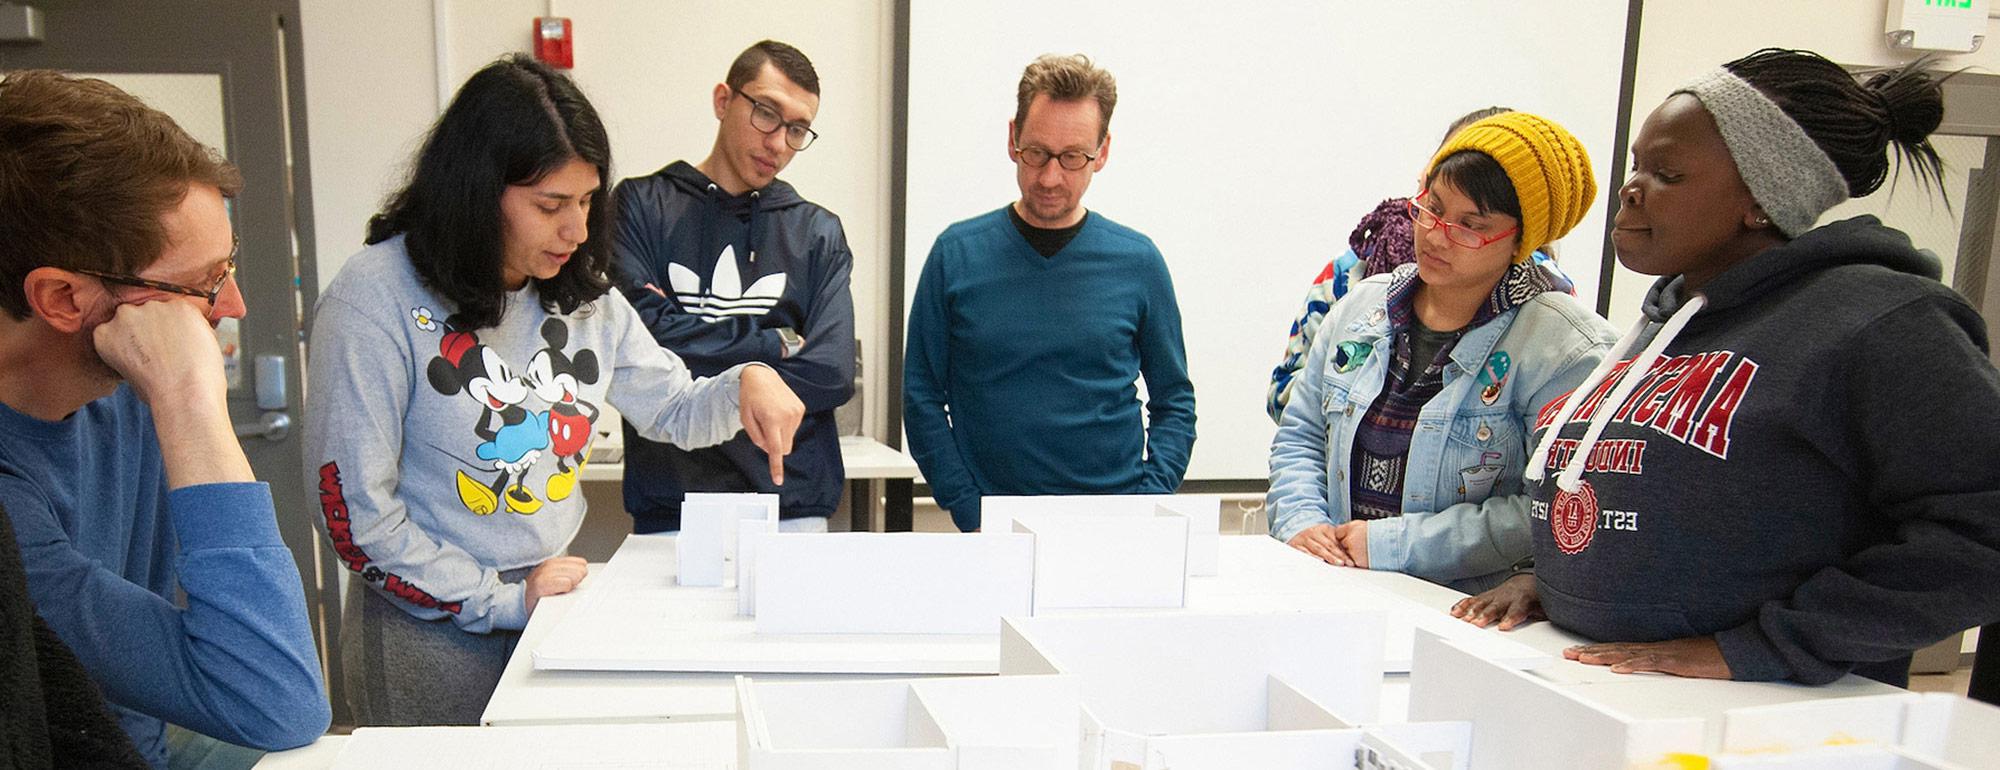 在设计课上，转学生们站在一个建筑模型周围